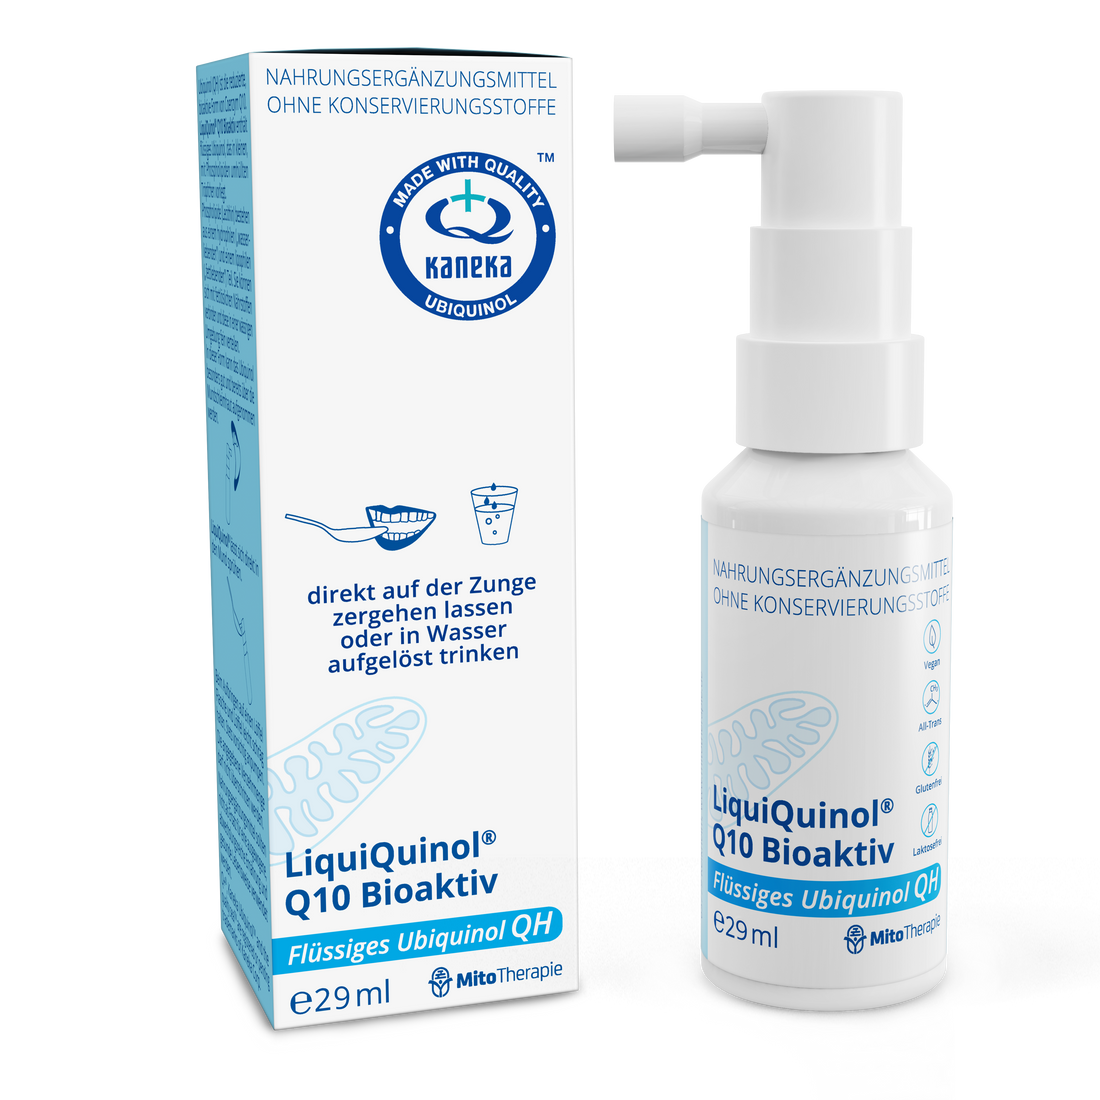 LiquiQuinol® Q10 Bioaktiv – ubiquinol líquido